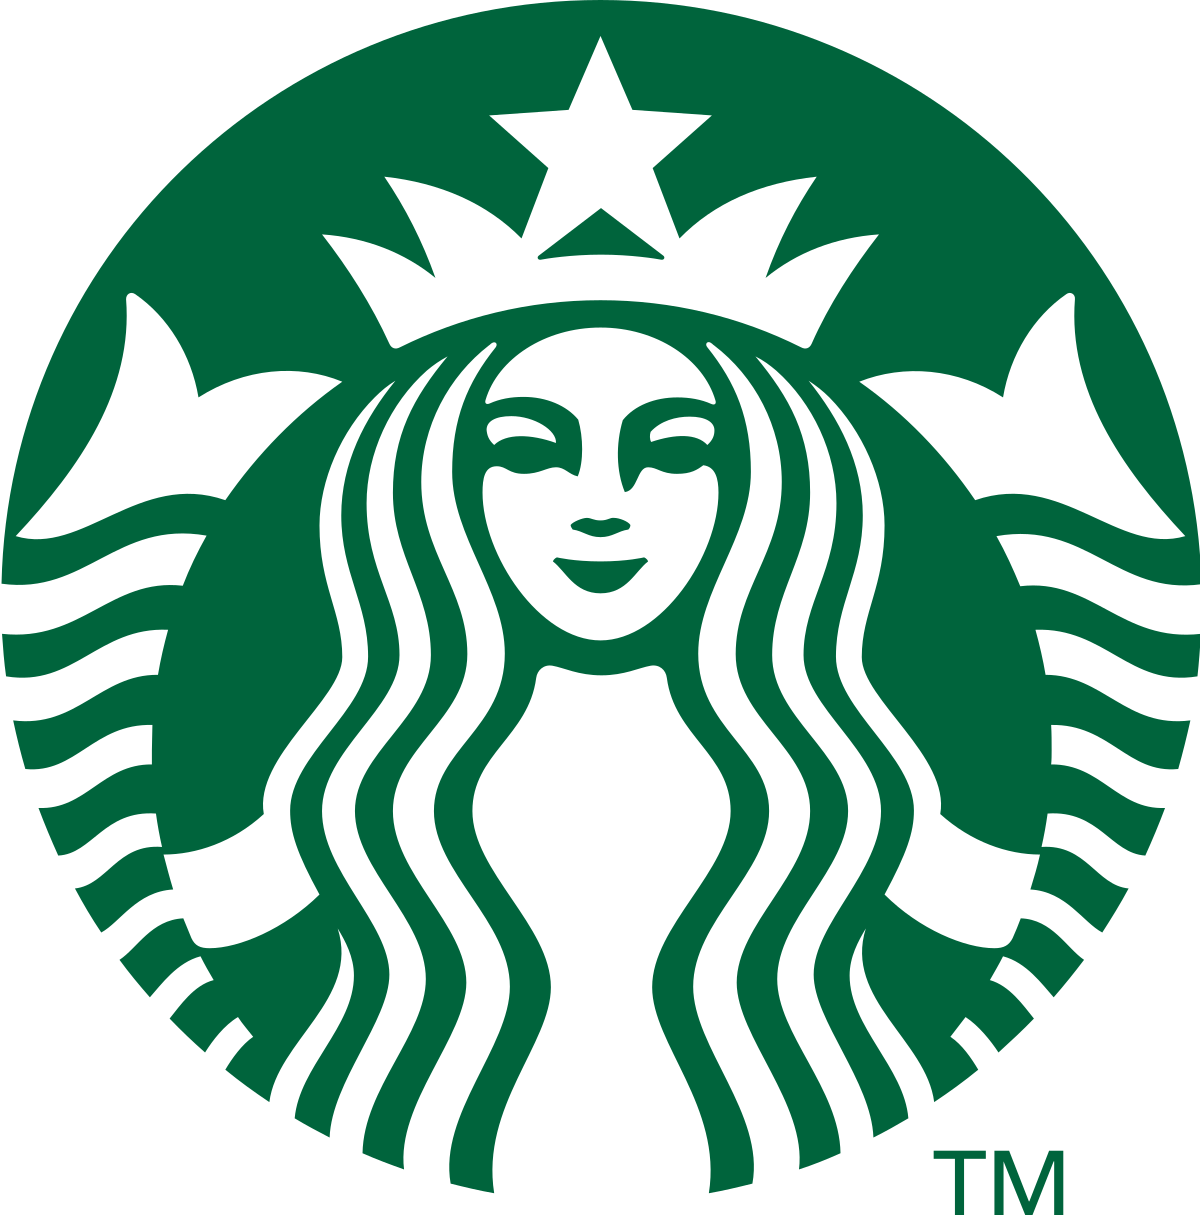 Starbucks logo design symmetrical